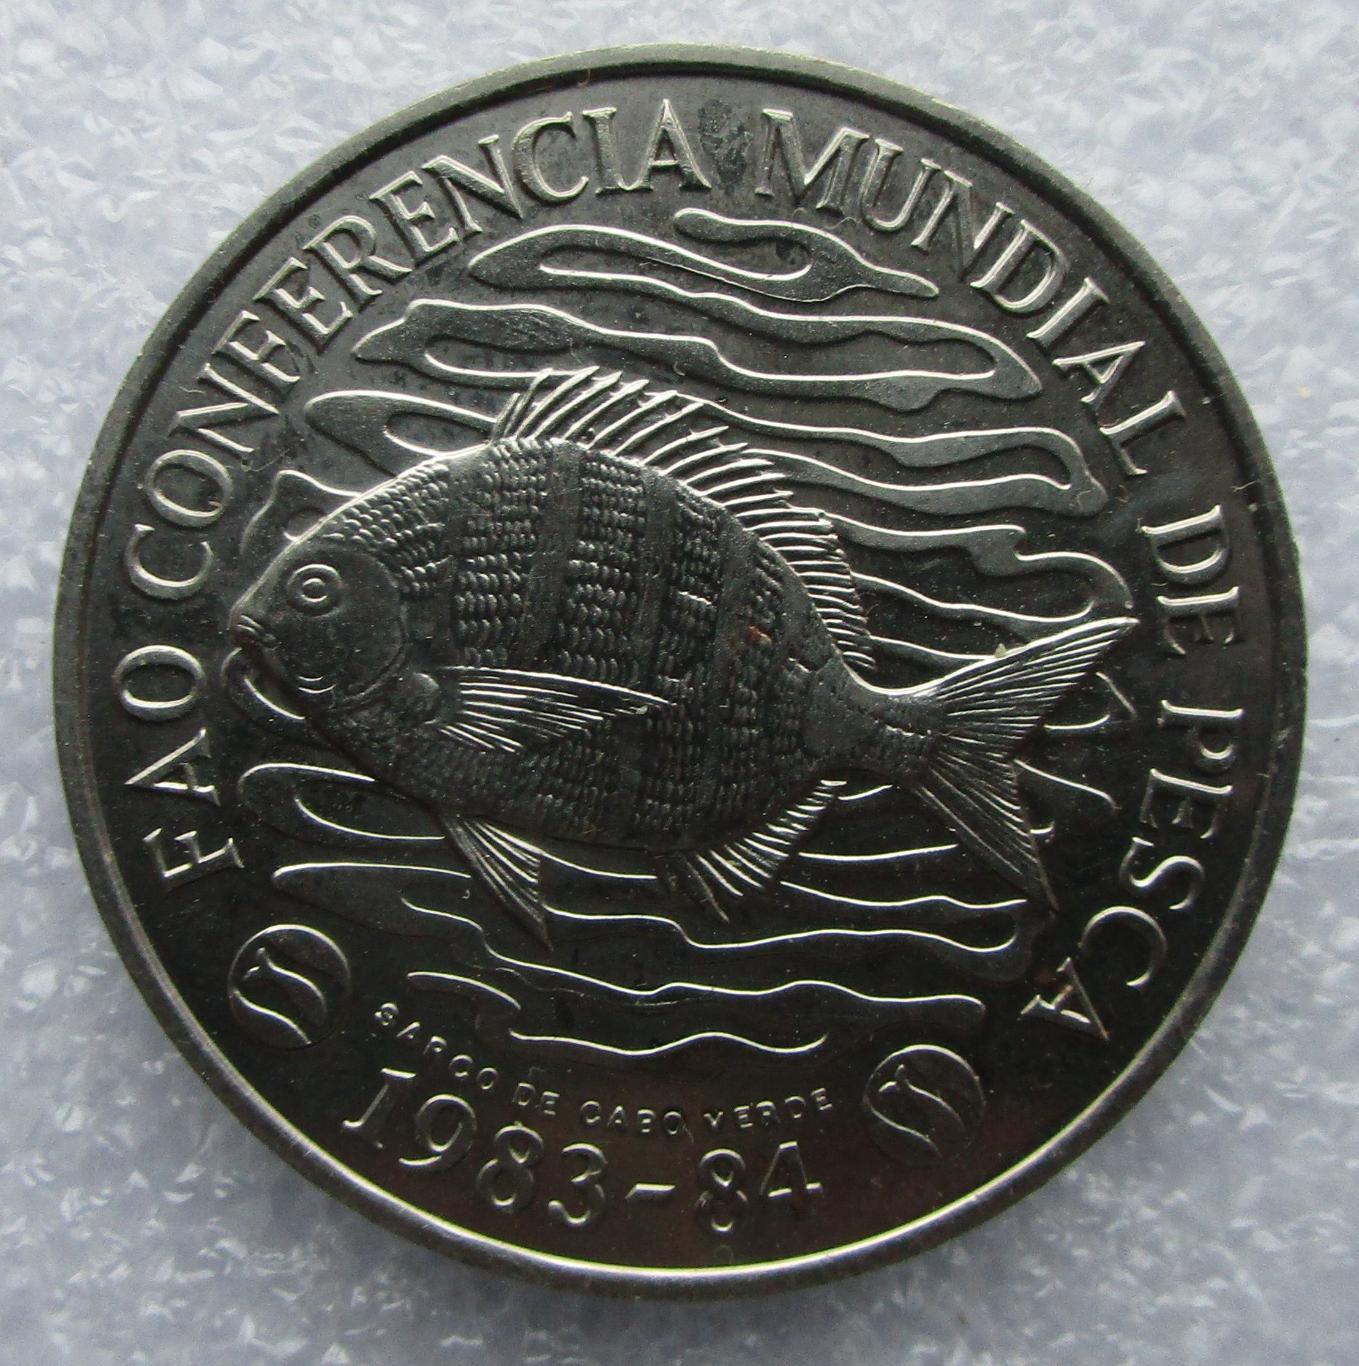 Кабо-Верде, 50 эскудо - 1984. Рыбы. UNC. Штемпельный блеск. 1